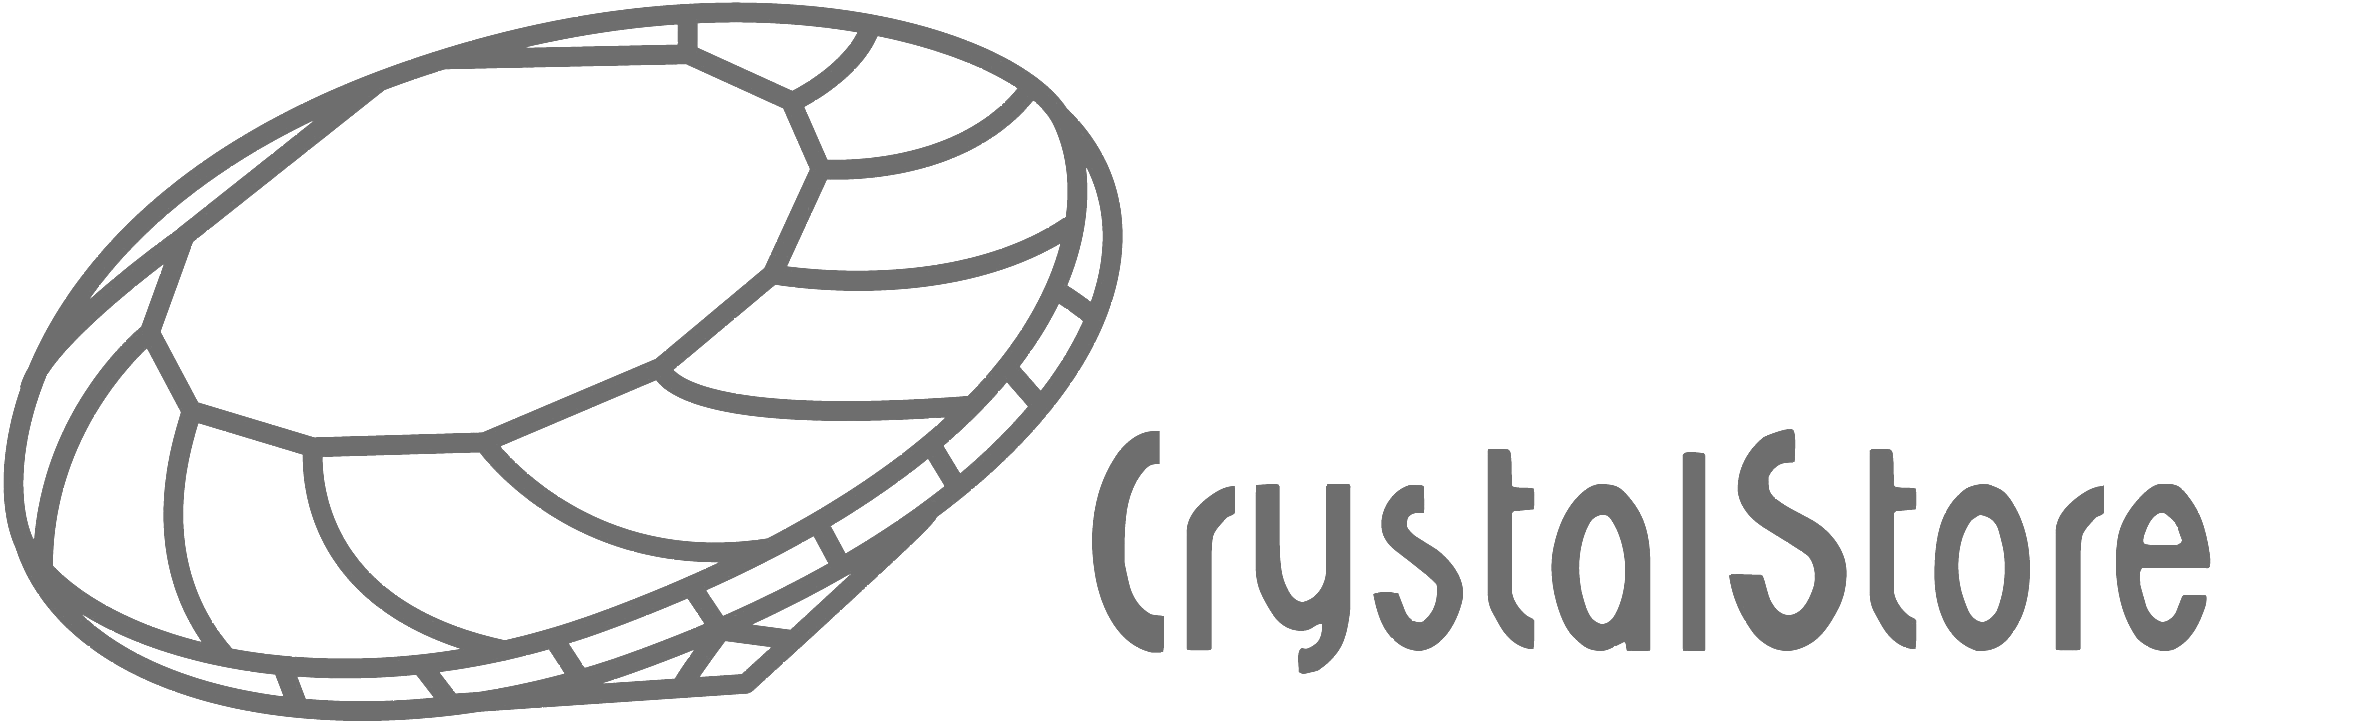 CrystalStore webwinkel voor Swarovski kristal